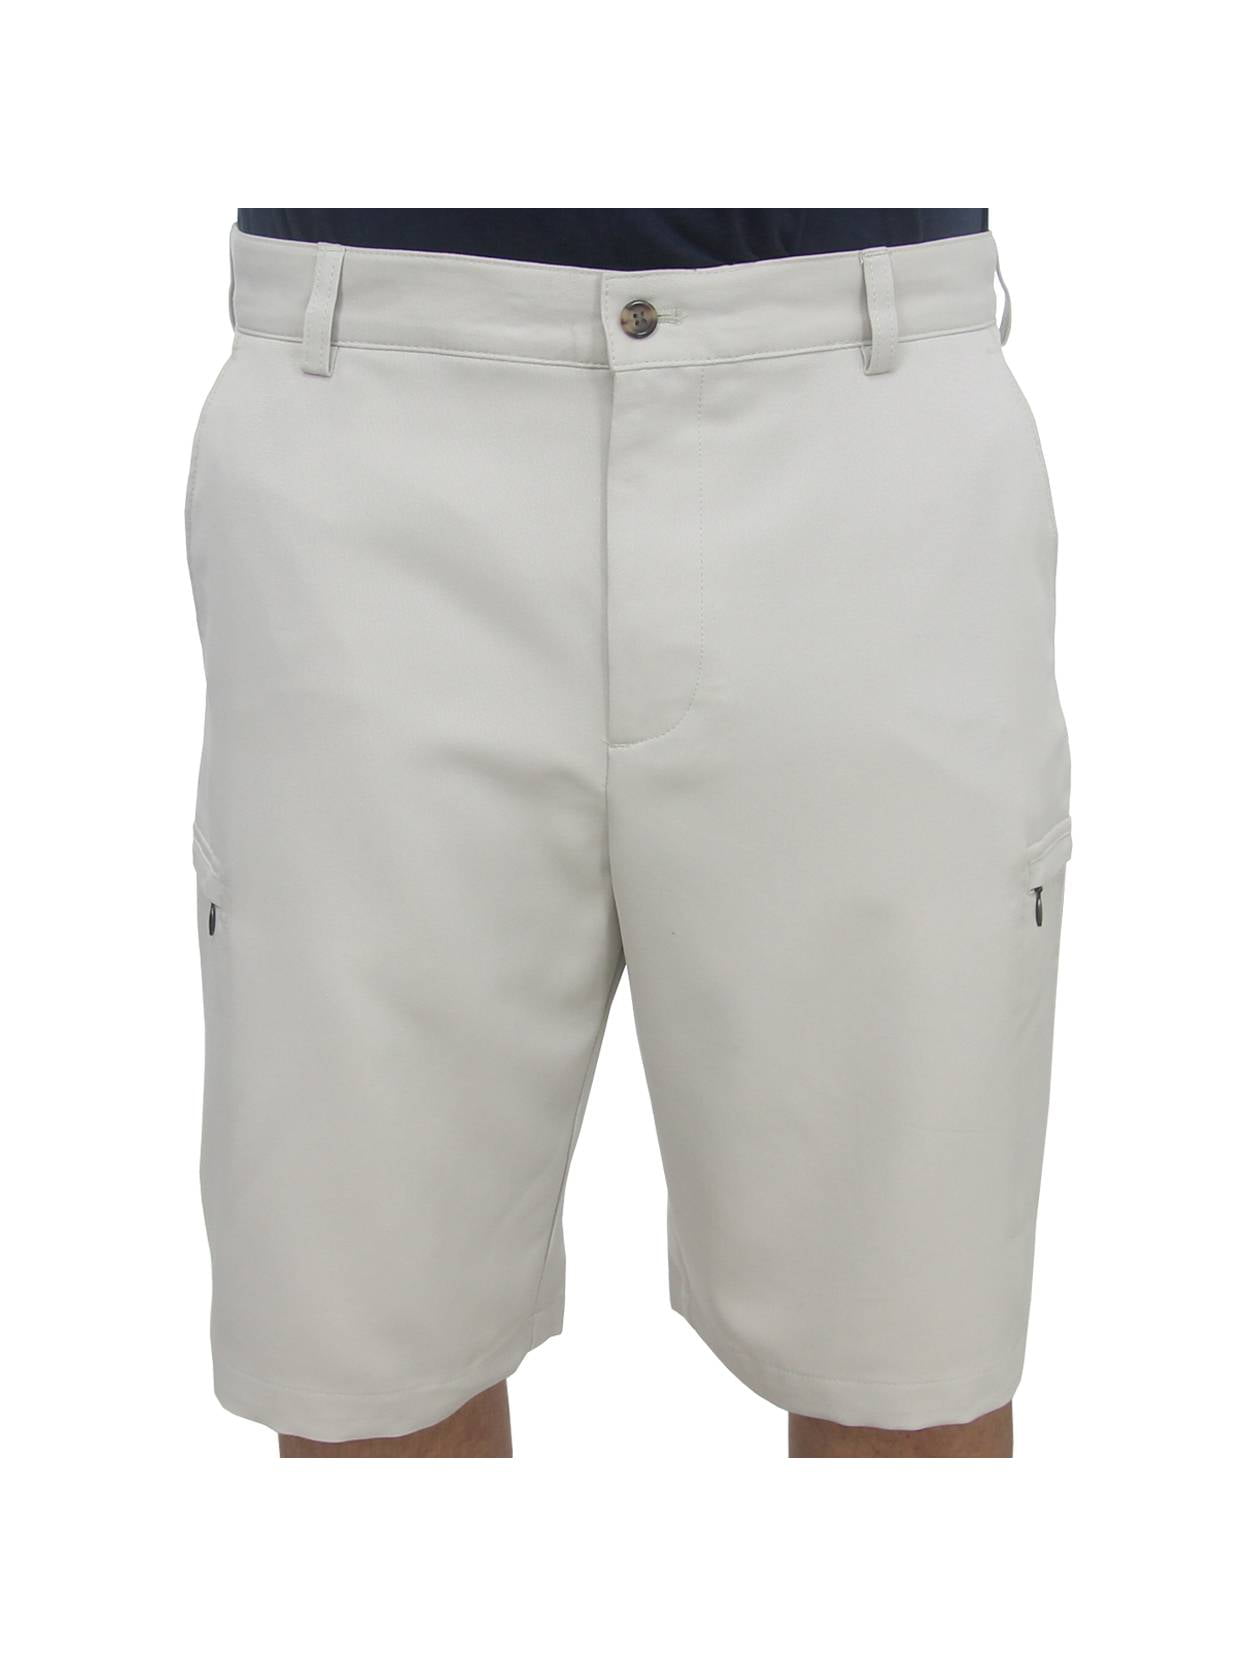 IZOD Golf Men's Flat Front Solid Cargo Shorts, NEW - - Walmart.com